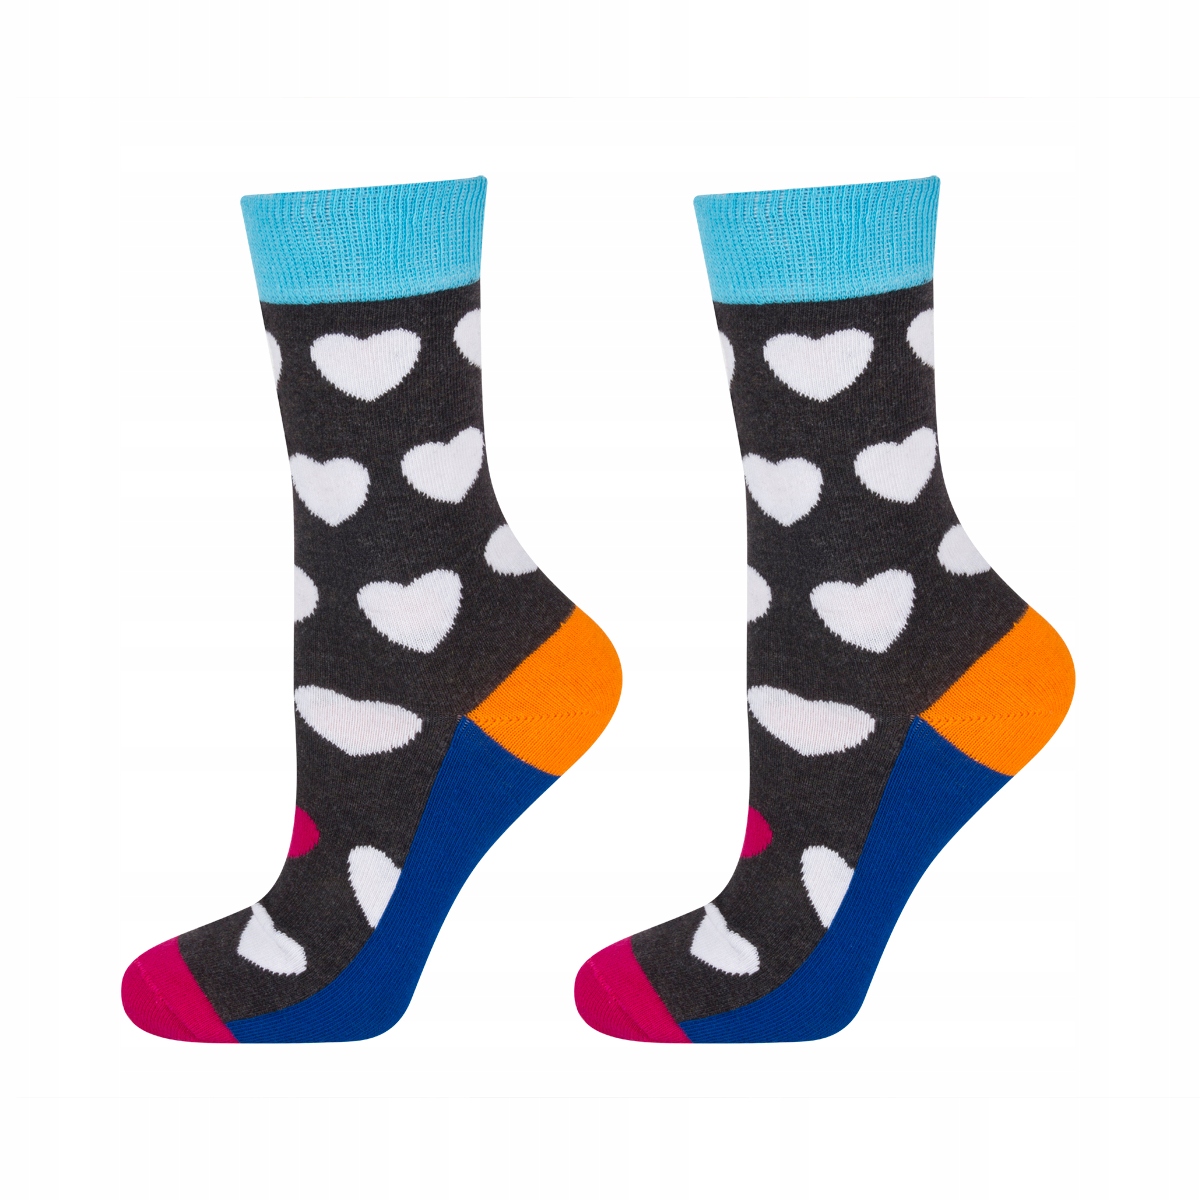 Kinder Socken SOXO GOOD STUFF mit Herzen - 5,99 € | Online-Shop SOXO